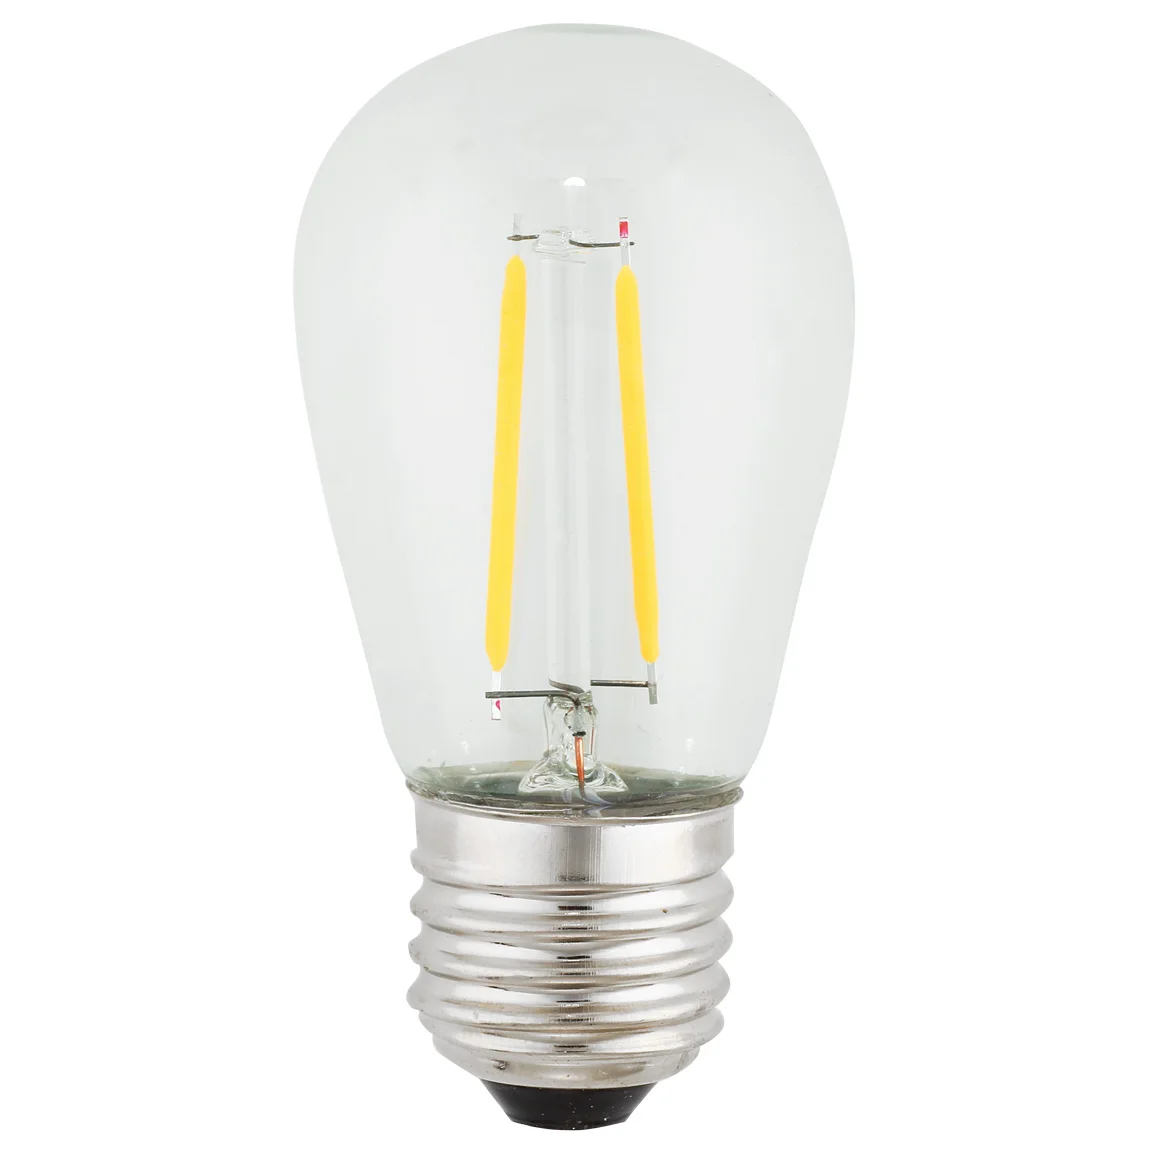 120V 1.5w Vintage LED Warm White S14 Light Bulb 